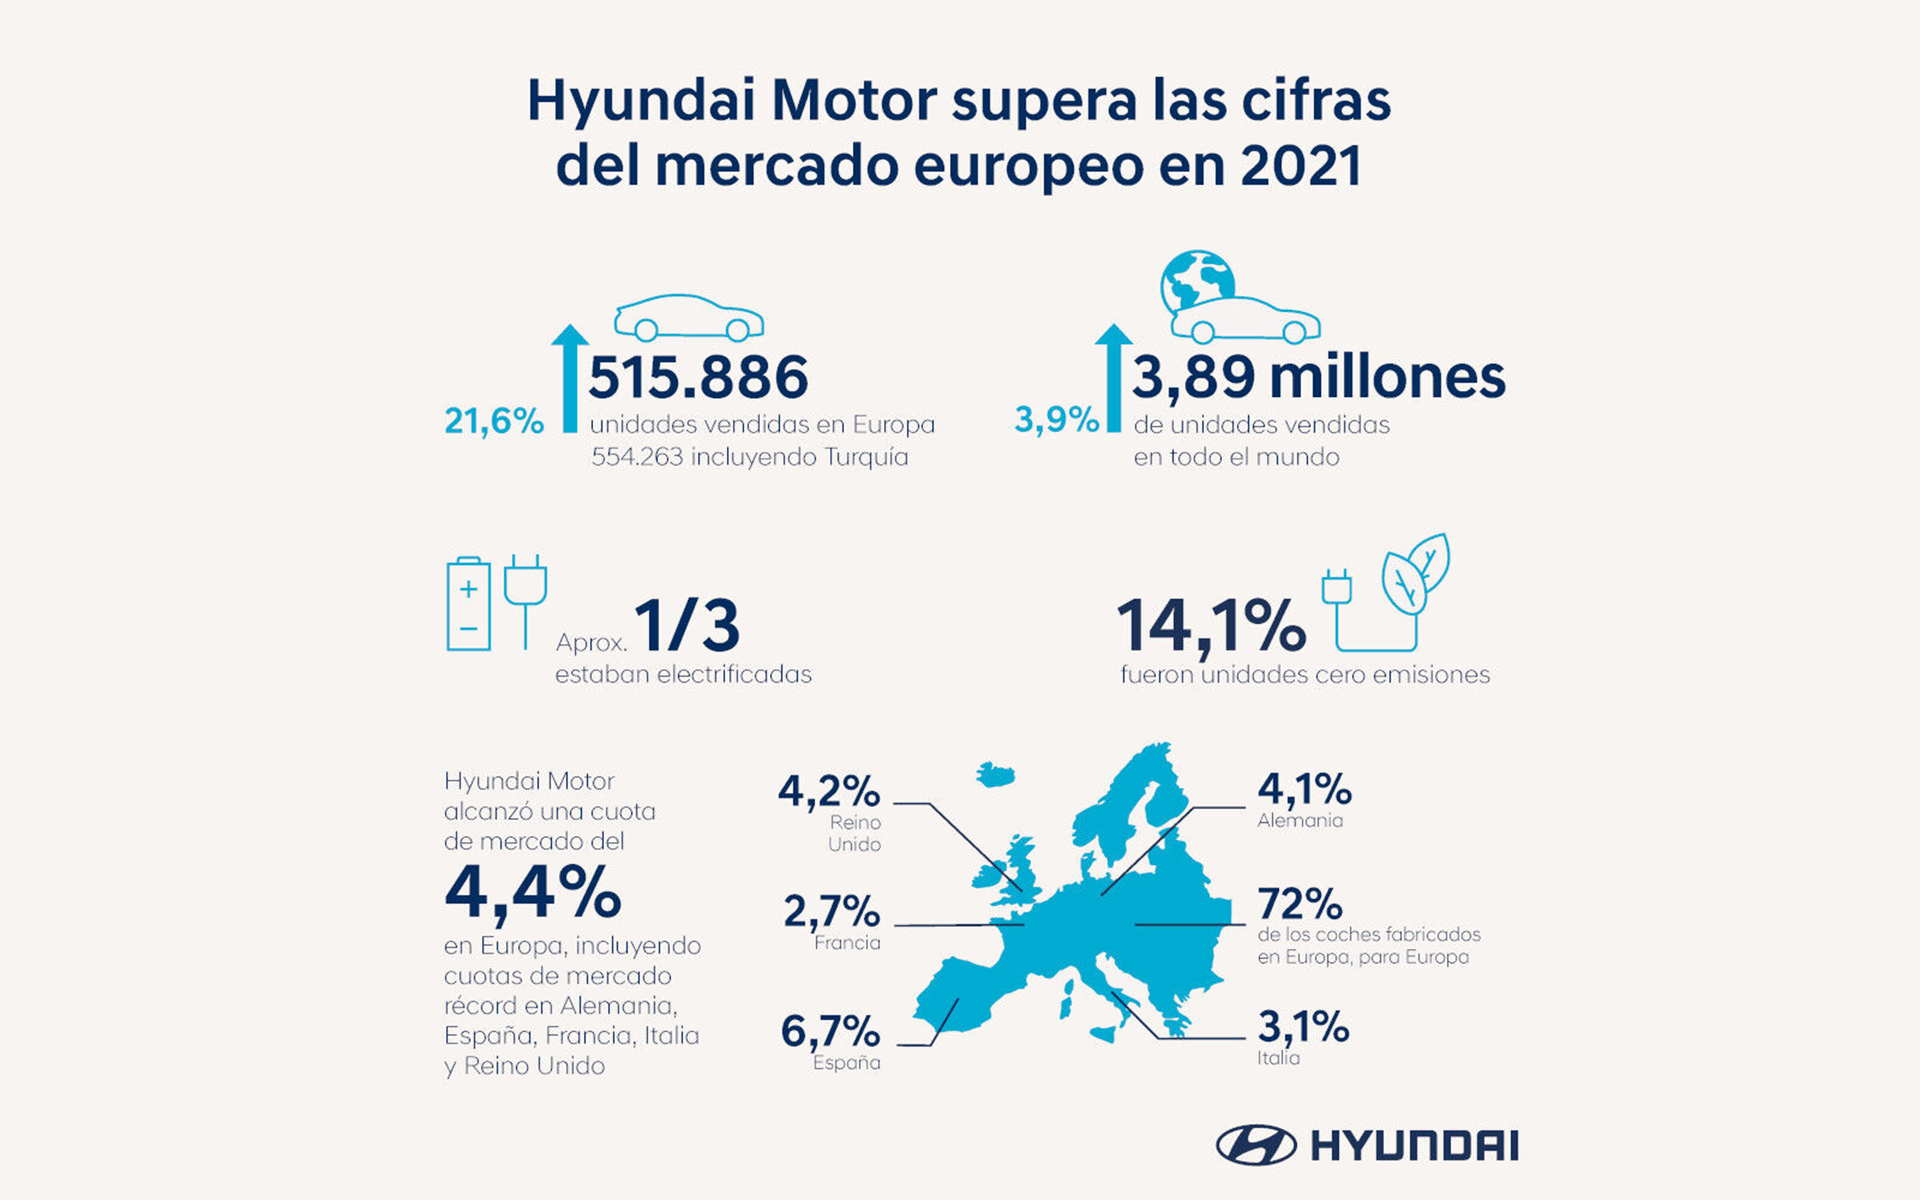 Las cifras de ventas son más que prometedoras para Hyundai